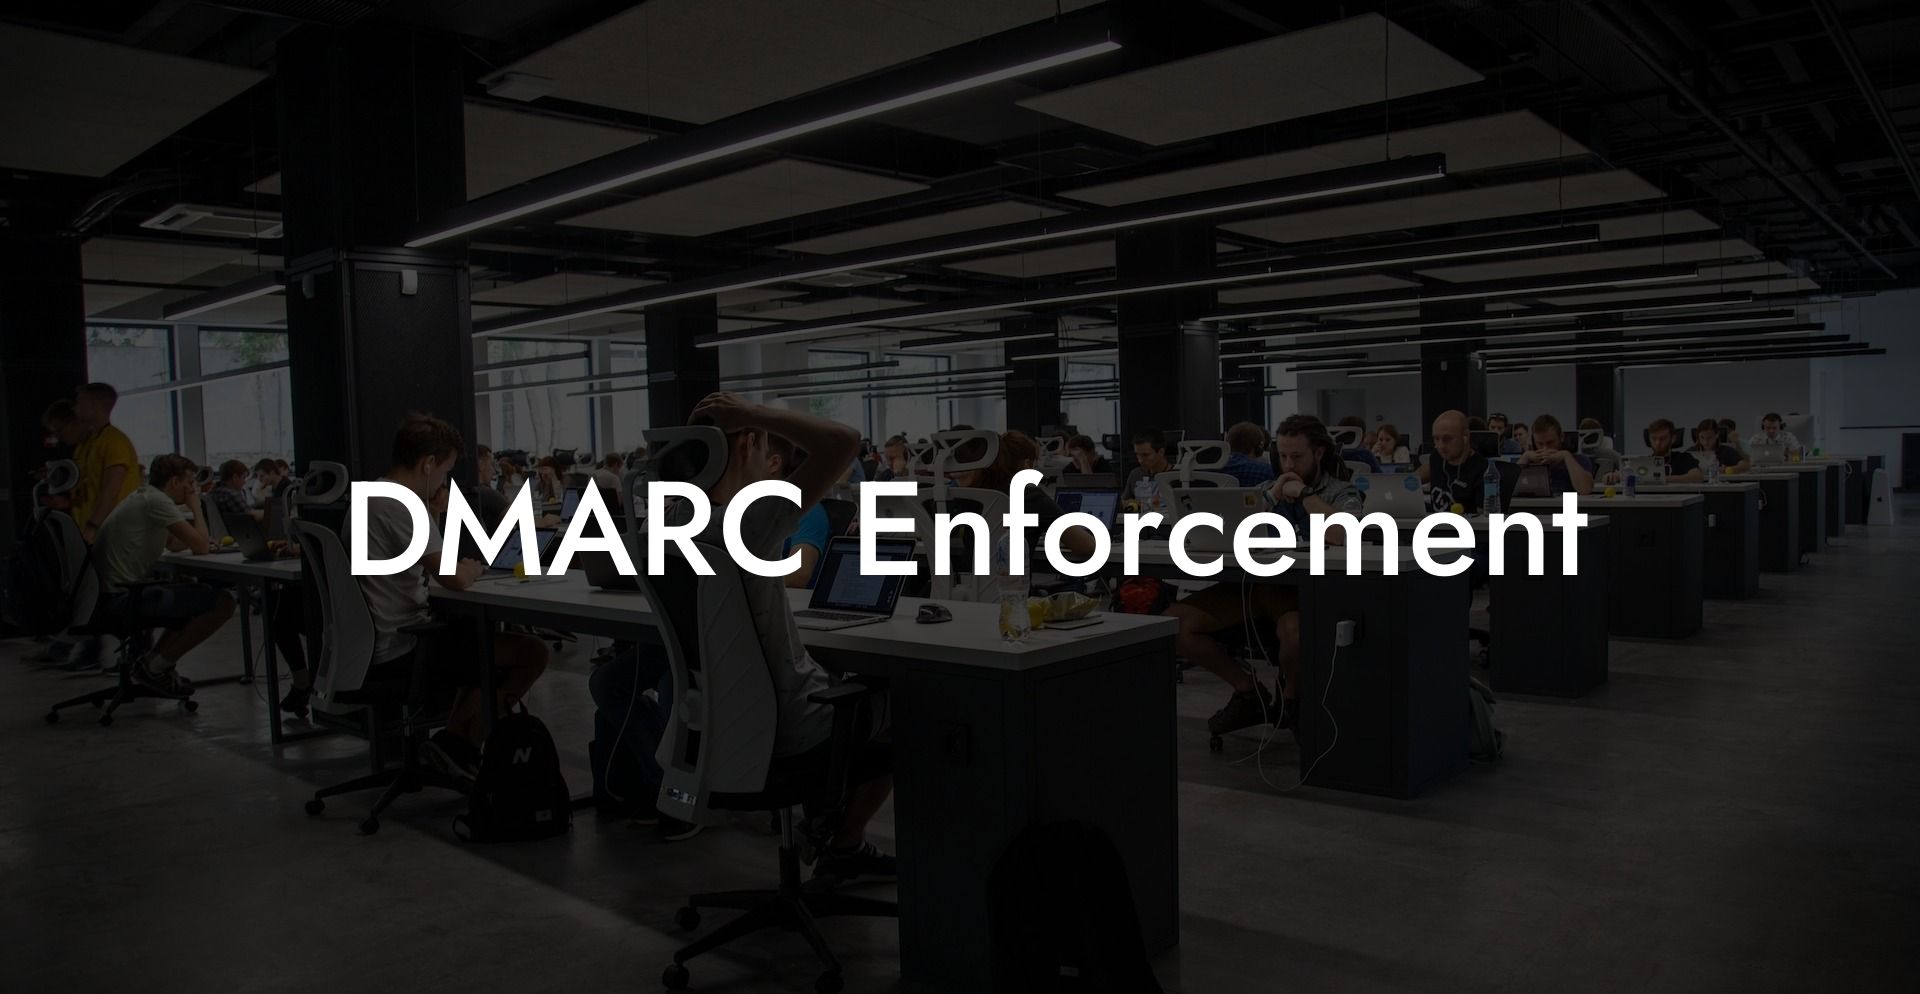 DMARC Enforcement